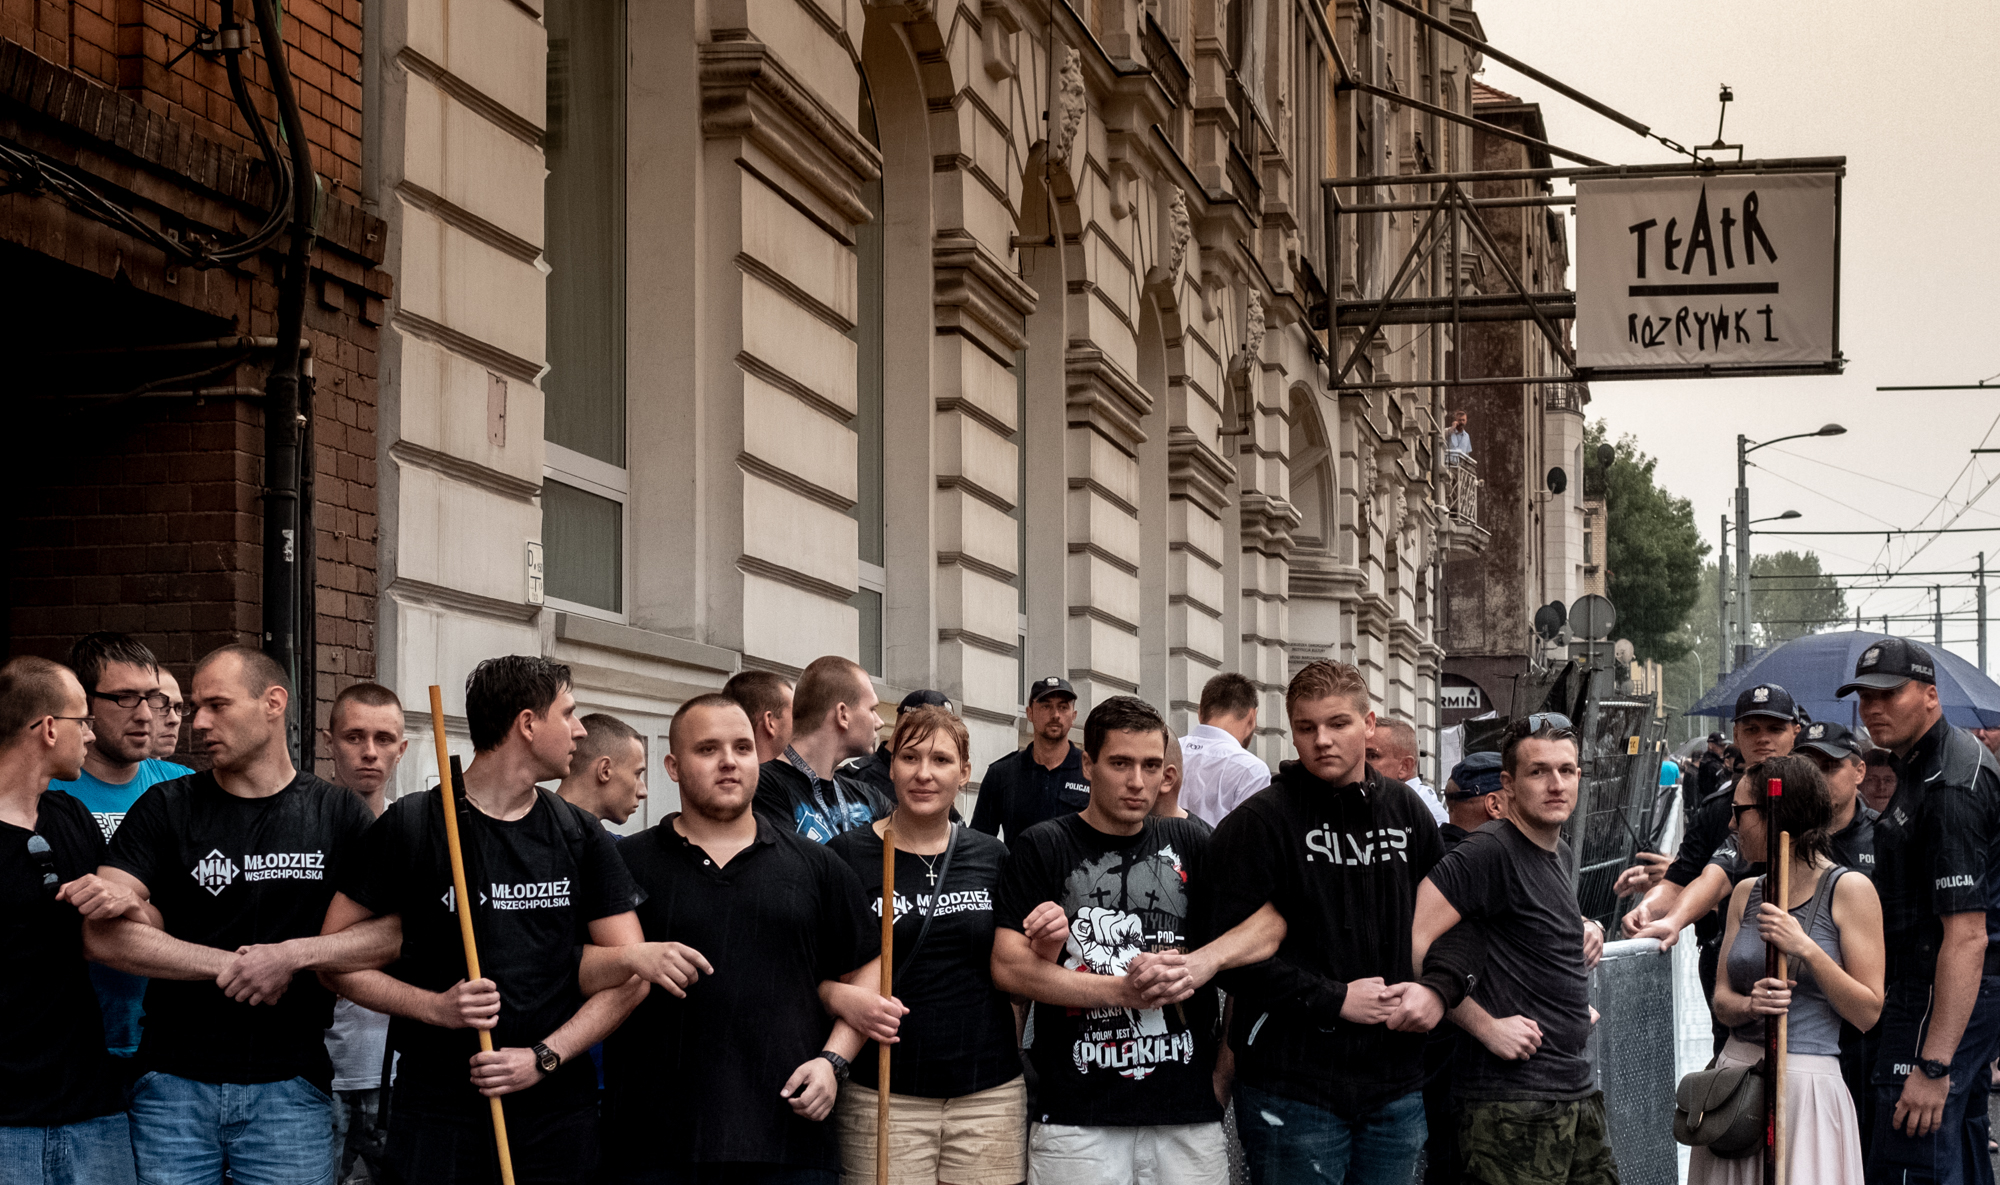 CHORZÓW "KLĄTWA" PROTEST PRZED TEATREM ROZRYWKI